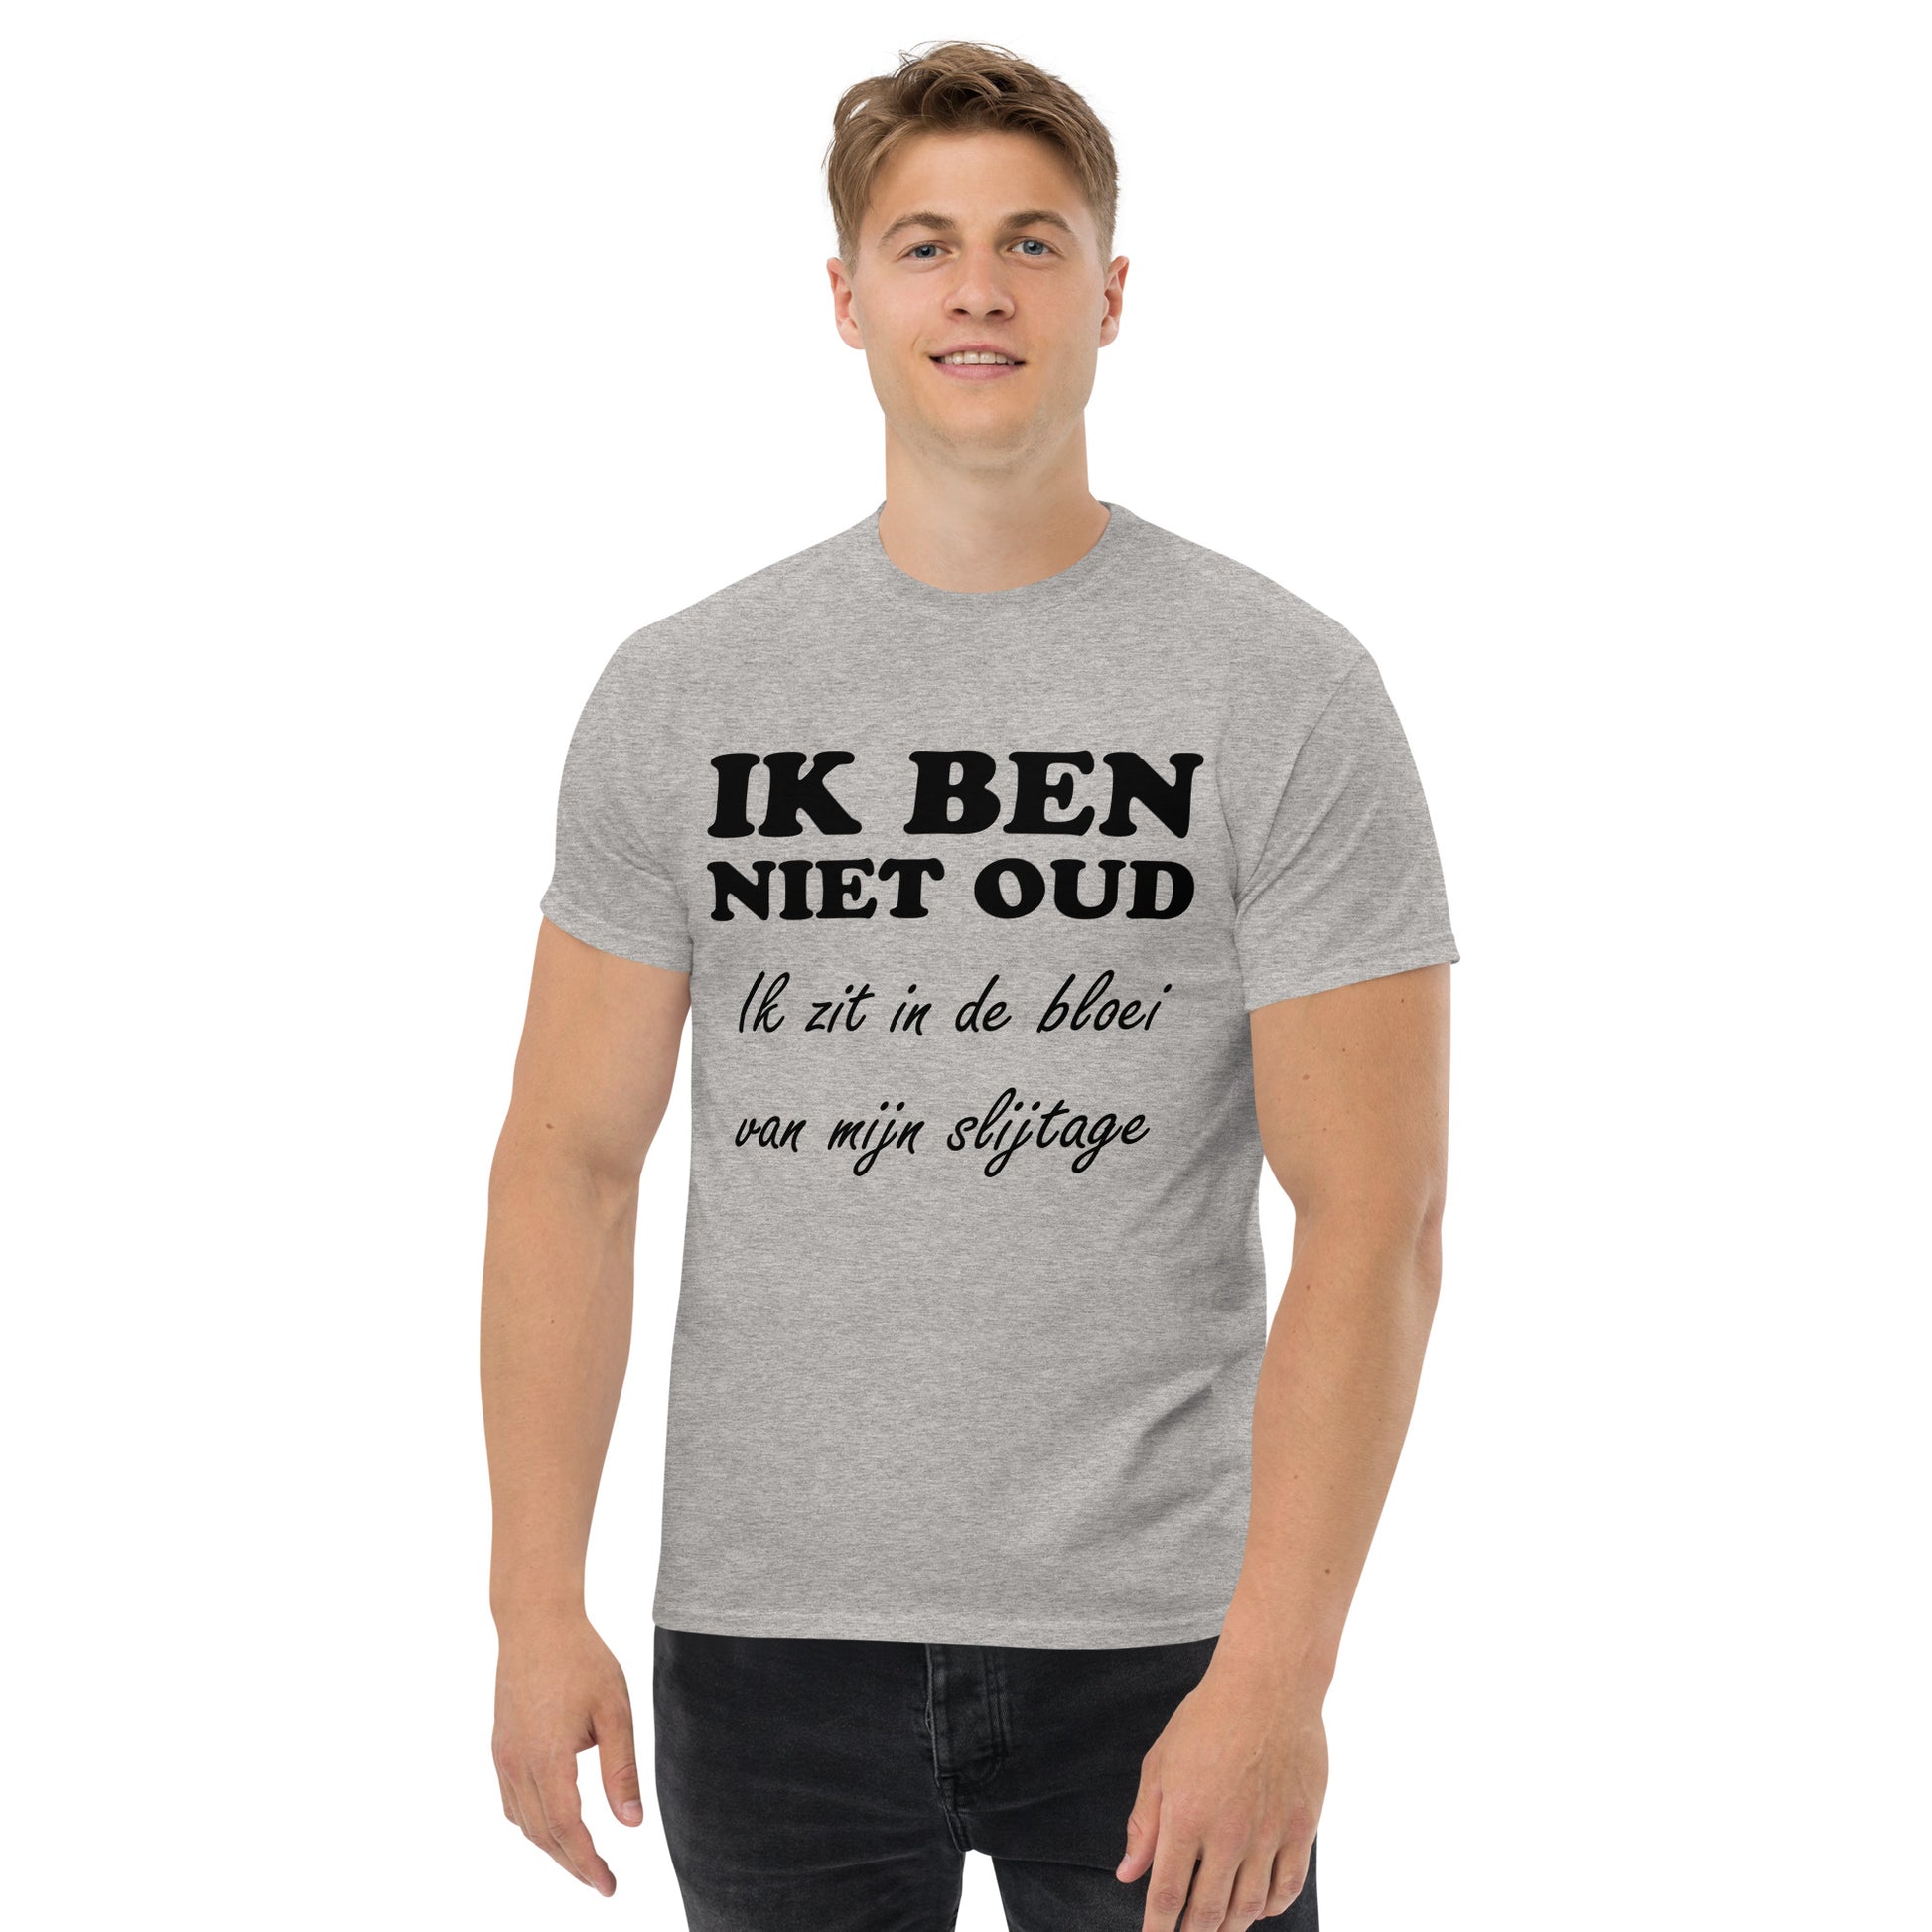 Sport grey T-shirt with the text "IK BEN NIET OUD ik zit in de bloei van mijn slijtage"